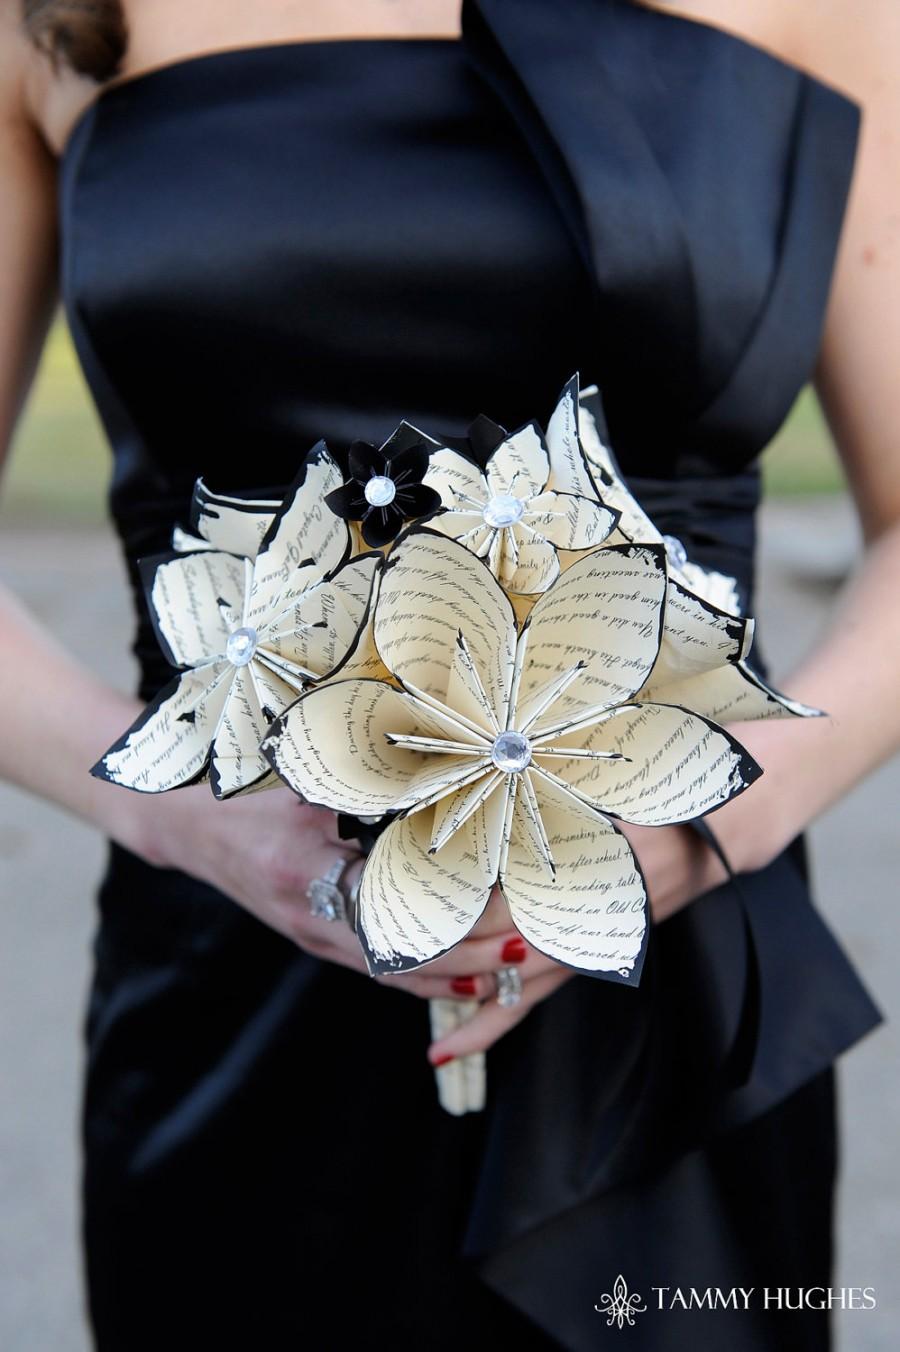 زفاف - Customized Bridal Bouquet- 12 inch, 20 flowers, made to order, wedding, centerpiece, custom paper flowers, one of a kind origami